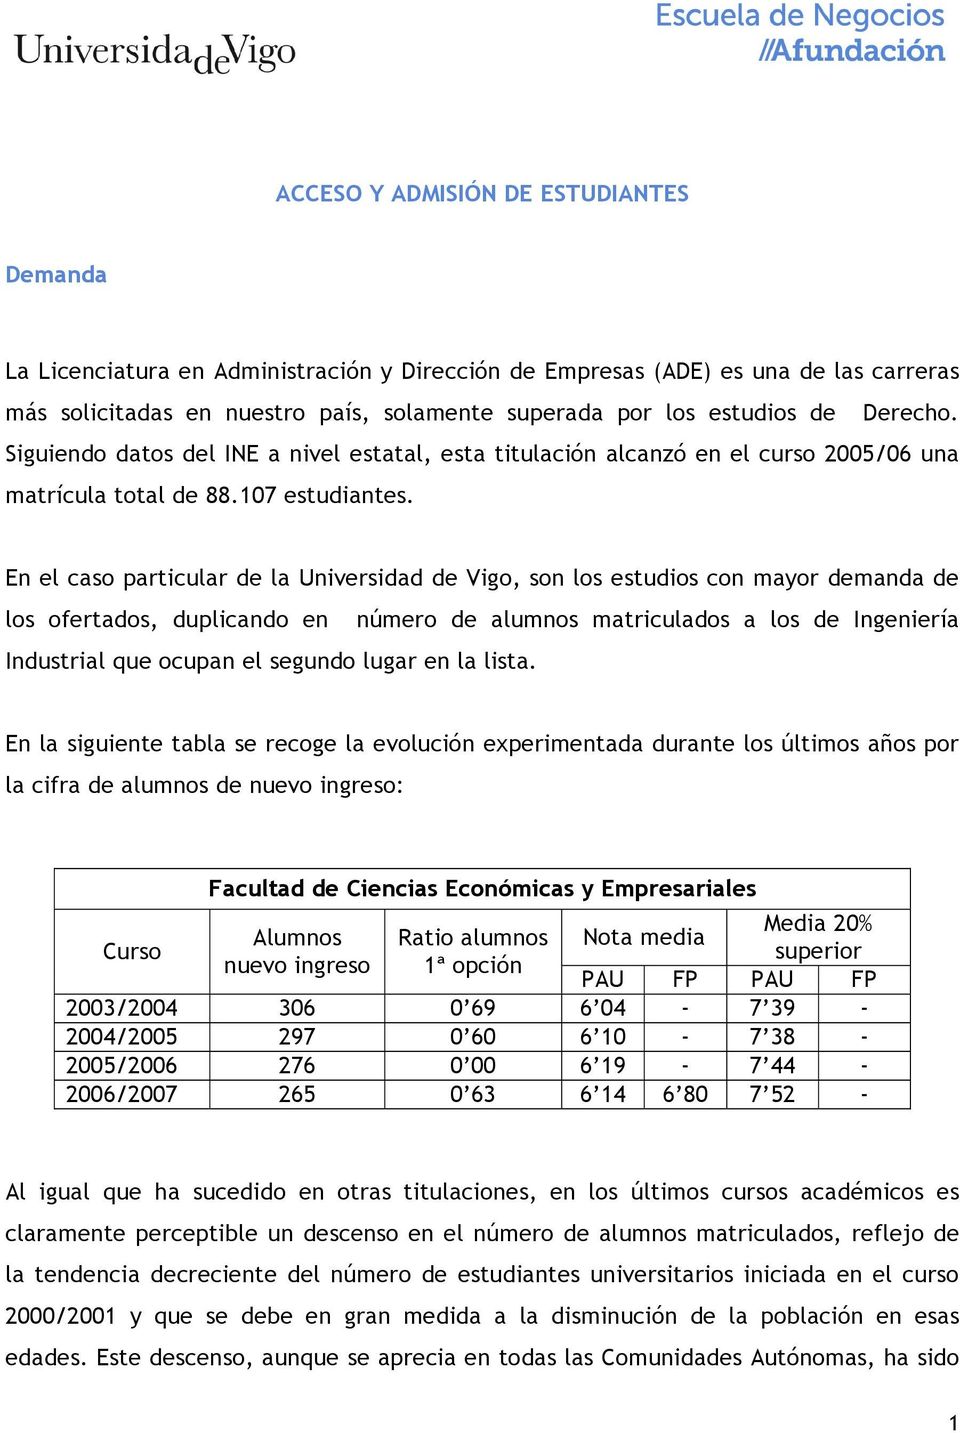 En el caso particular de la Universidad de Vigo, son los estudios con mayor demanda de los ofertados, duplicando en número de alumnos matriculados a los de Ingeniería Industrial que ocupan el segundo